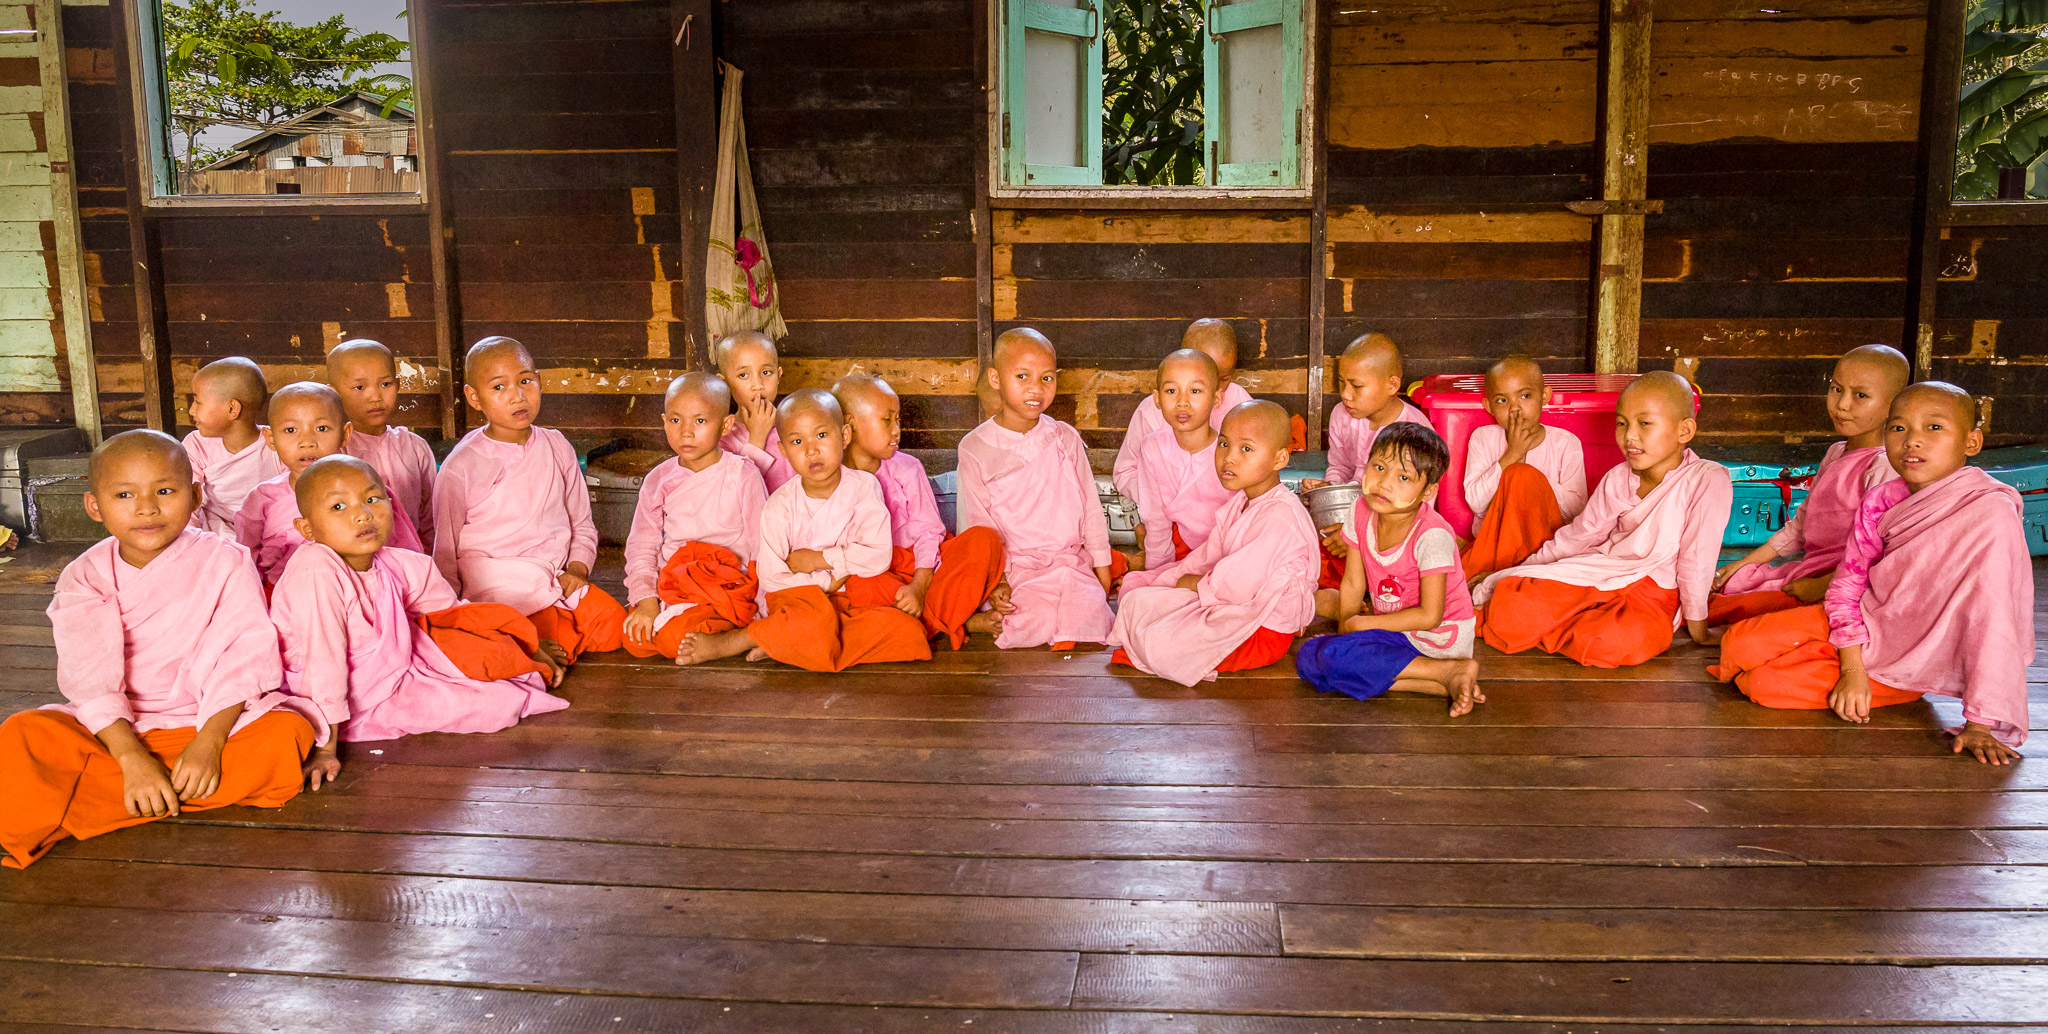 Yangon Buddhist nunnery